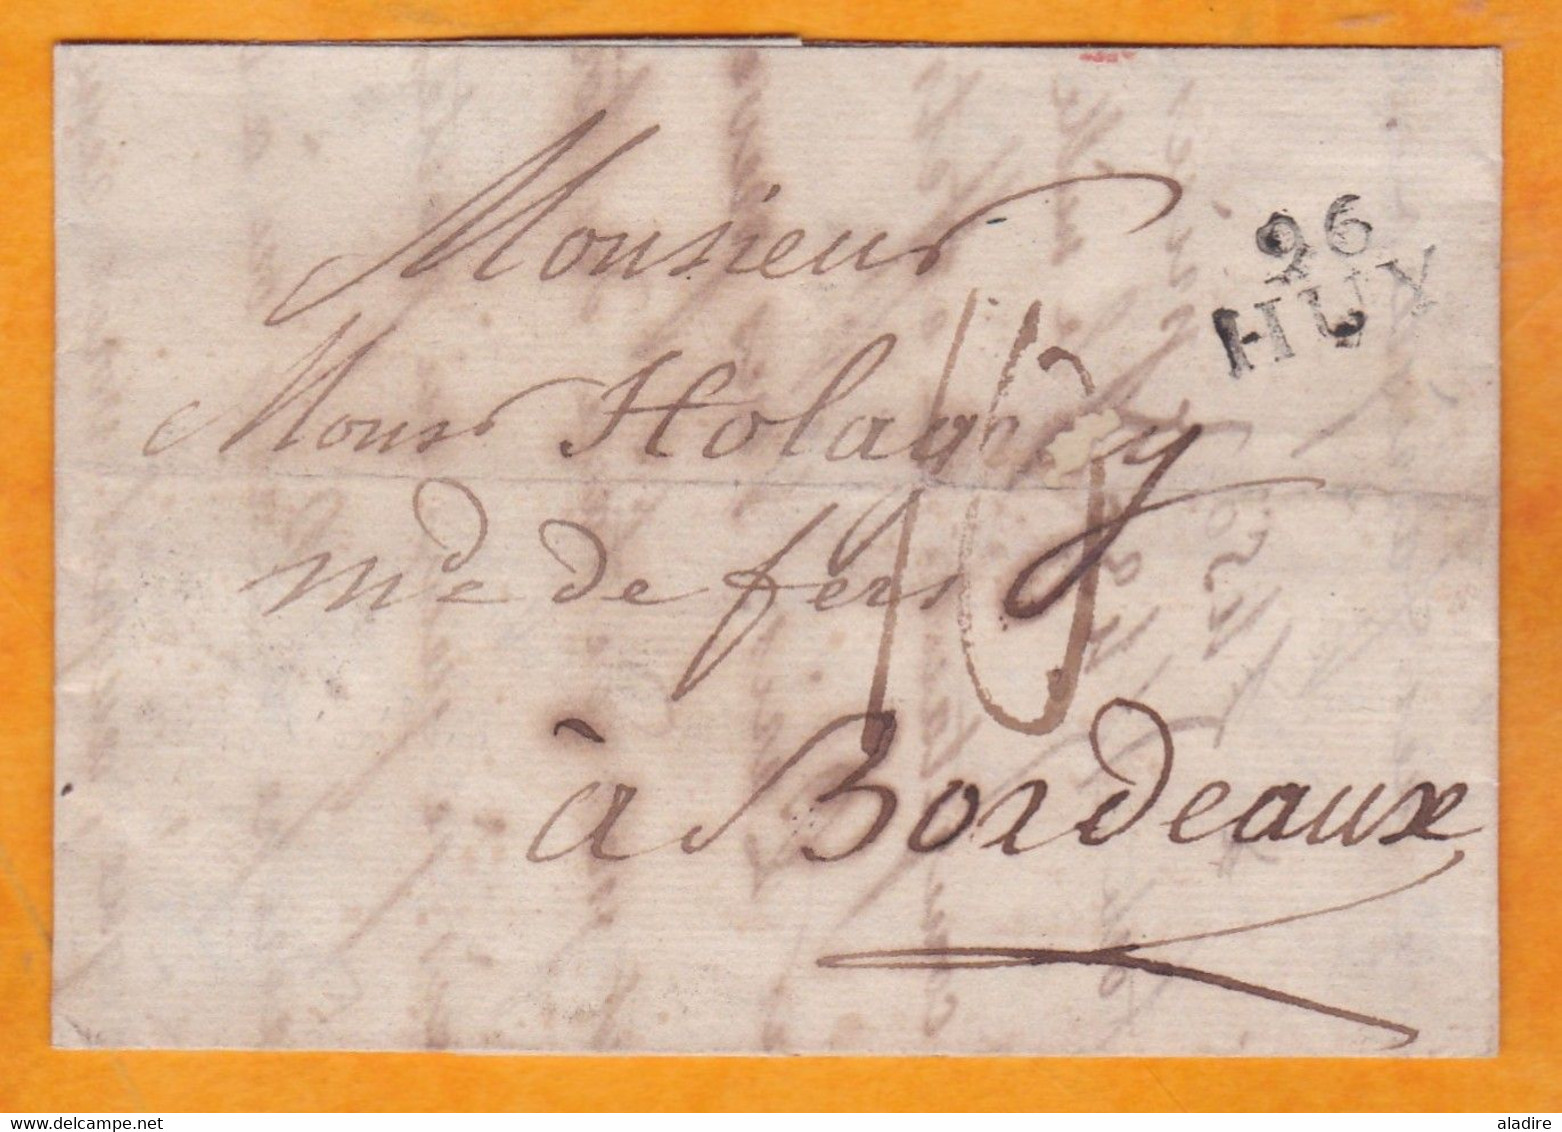 1810 Marque Postale 96 HUY, Auj.en Belgique, Départ Conquis De L'Ourthe, Vers Bordeaux - Holagray Marchand De Fers - 1792-1815: Conquered Departments